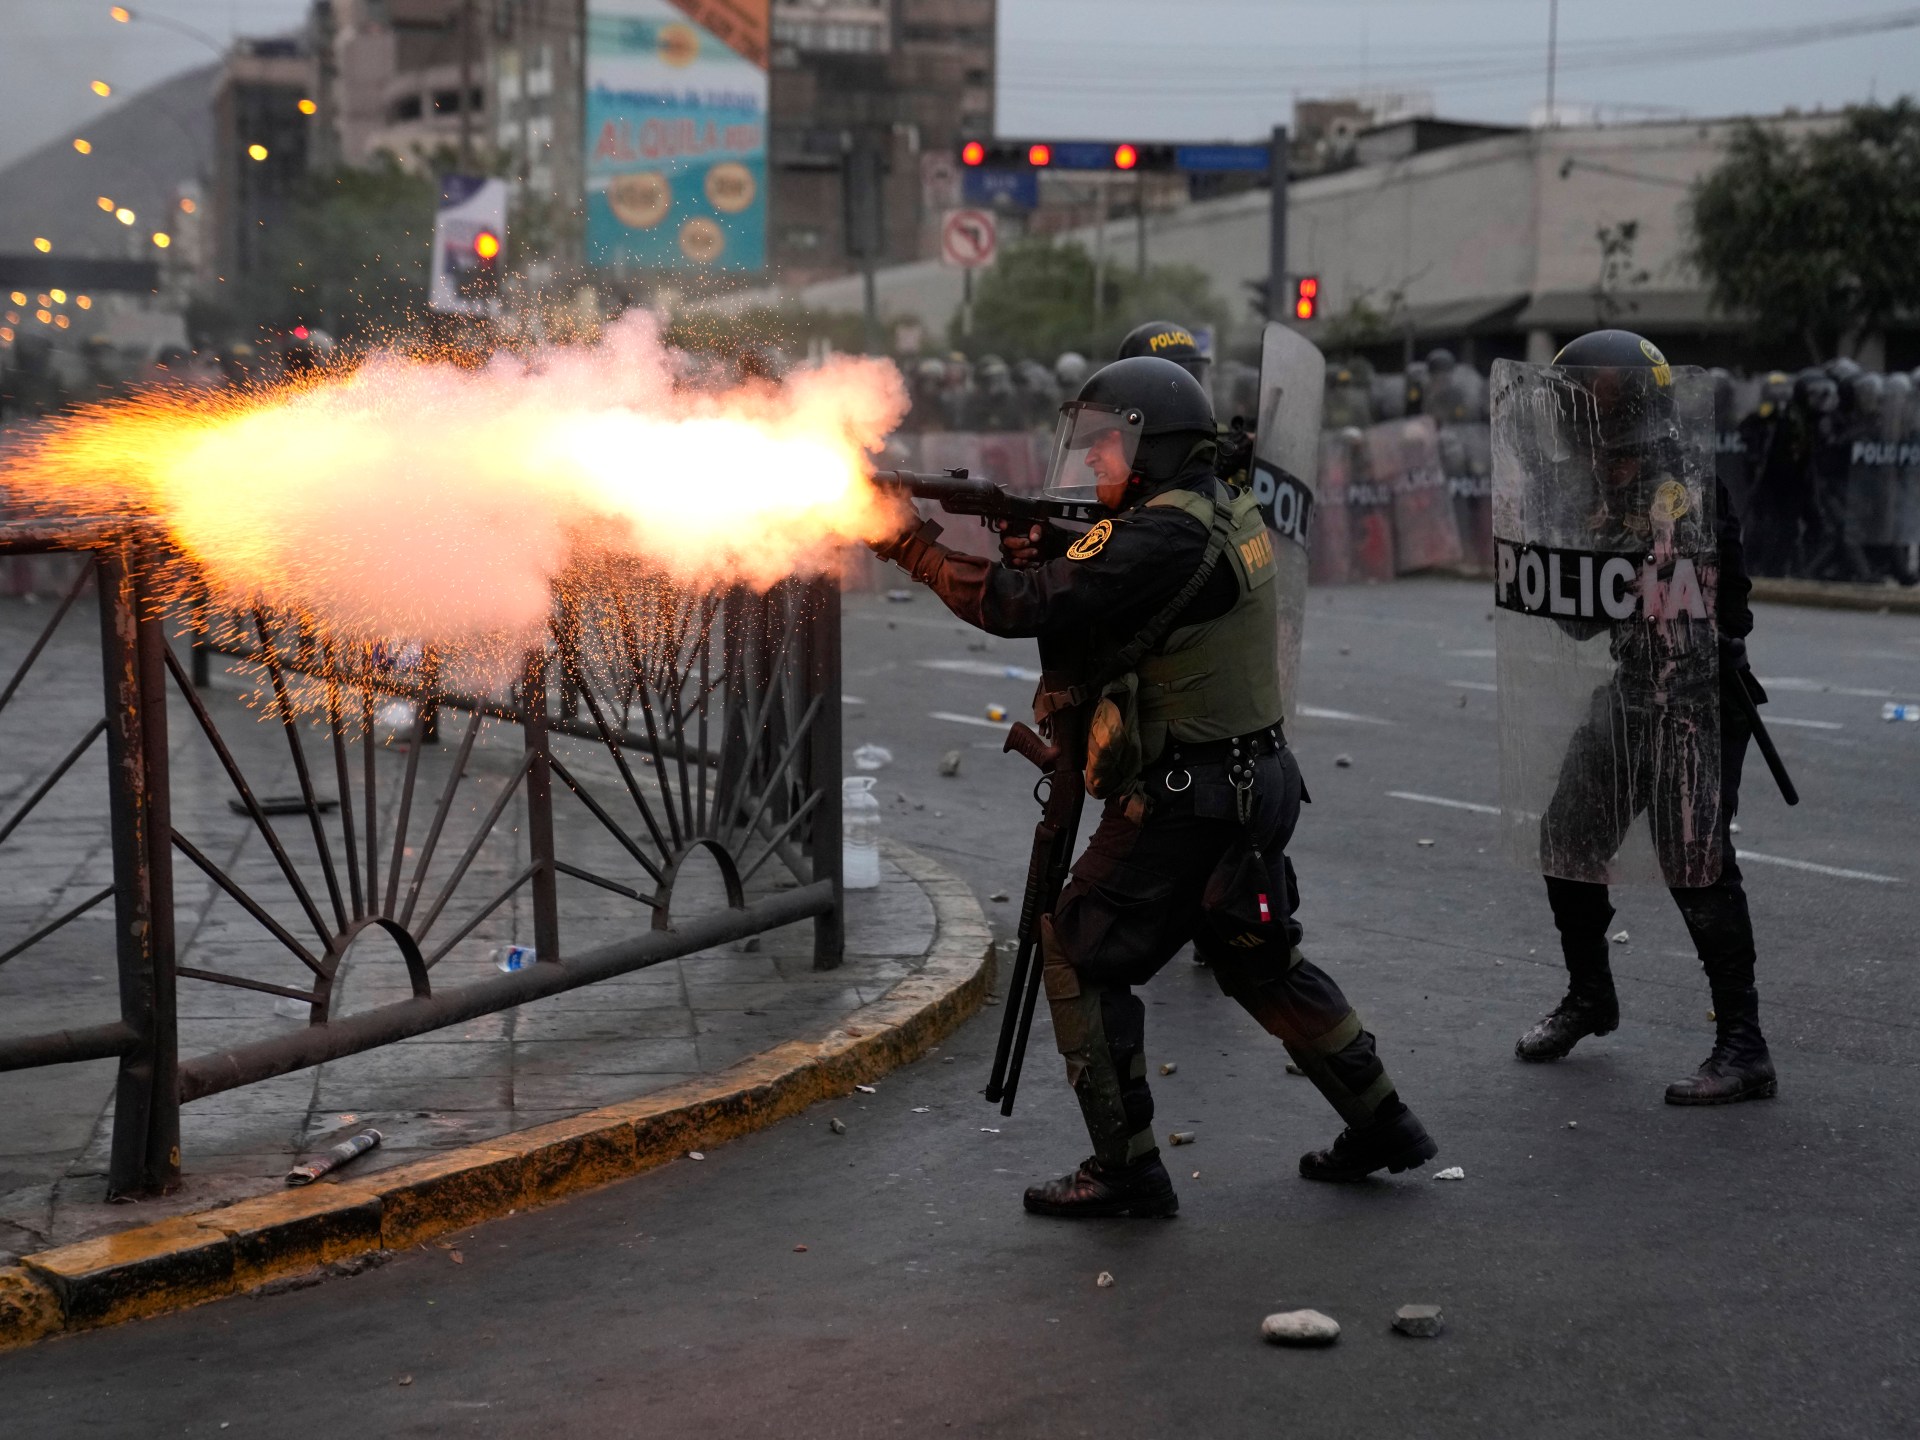 La législature péruvienne rejette la proposition d’élections accélérées |  Protestations Nouvelles